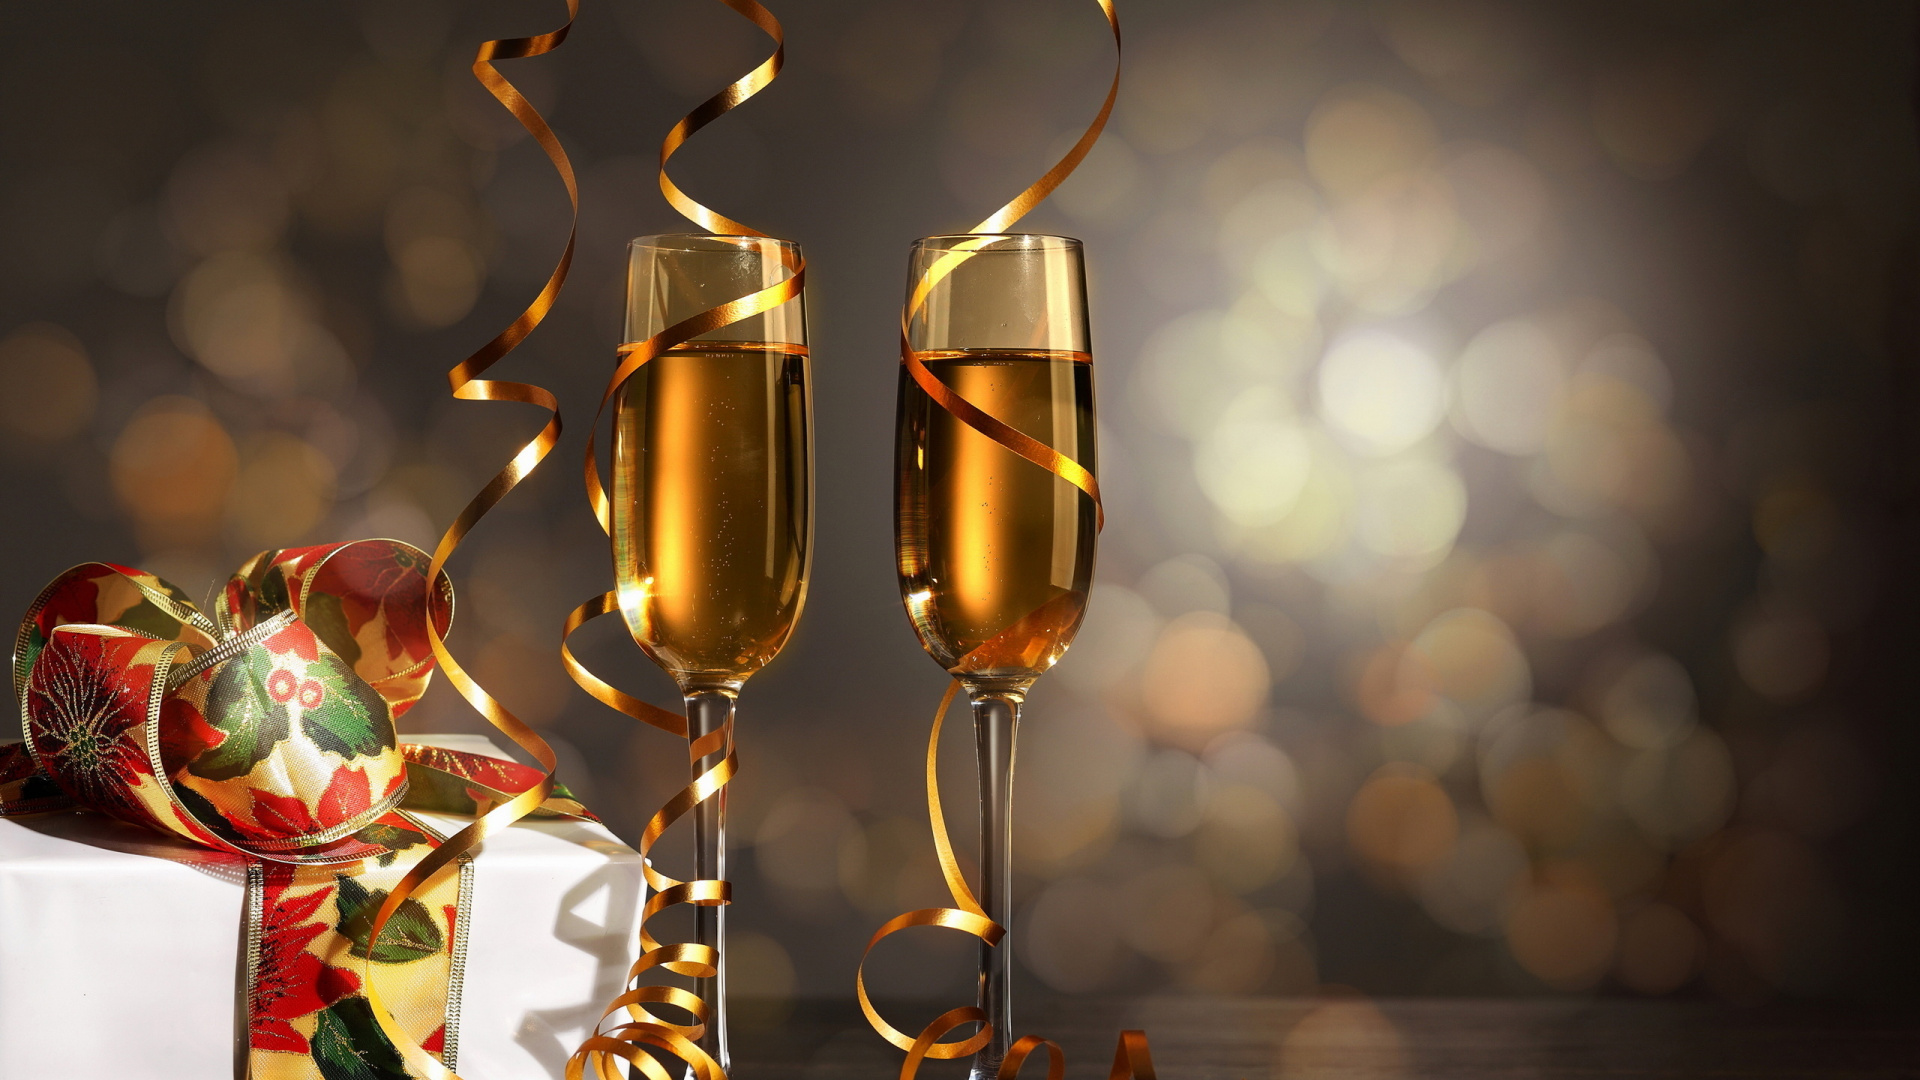 Champagner, Neujahr, Wein, Geburtstag, Champagner Gläsern. Wallpaper in 1920x1080 Resolution